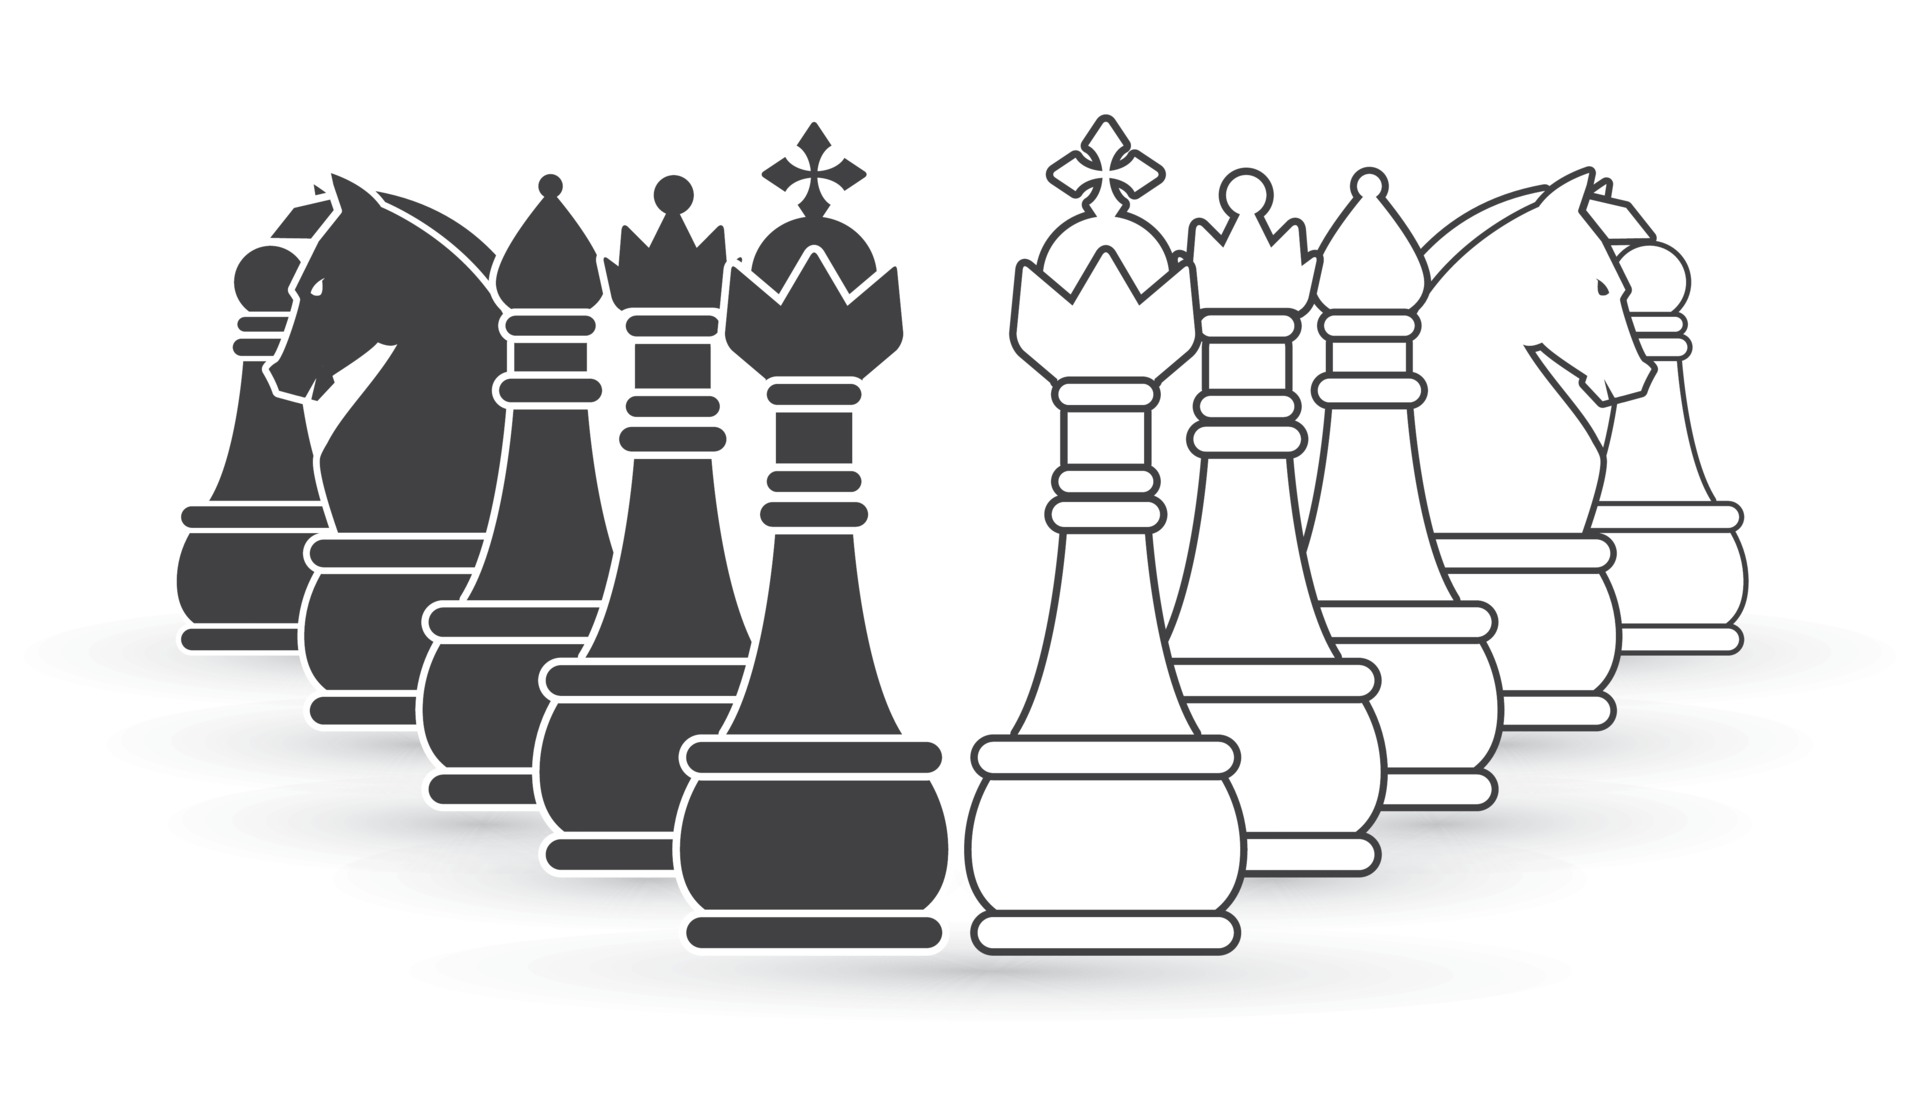 imagem vetorial, peão de xadrez preto e branco 5237182 Vetor no Vecteezy